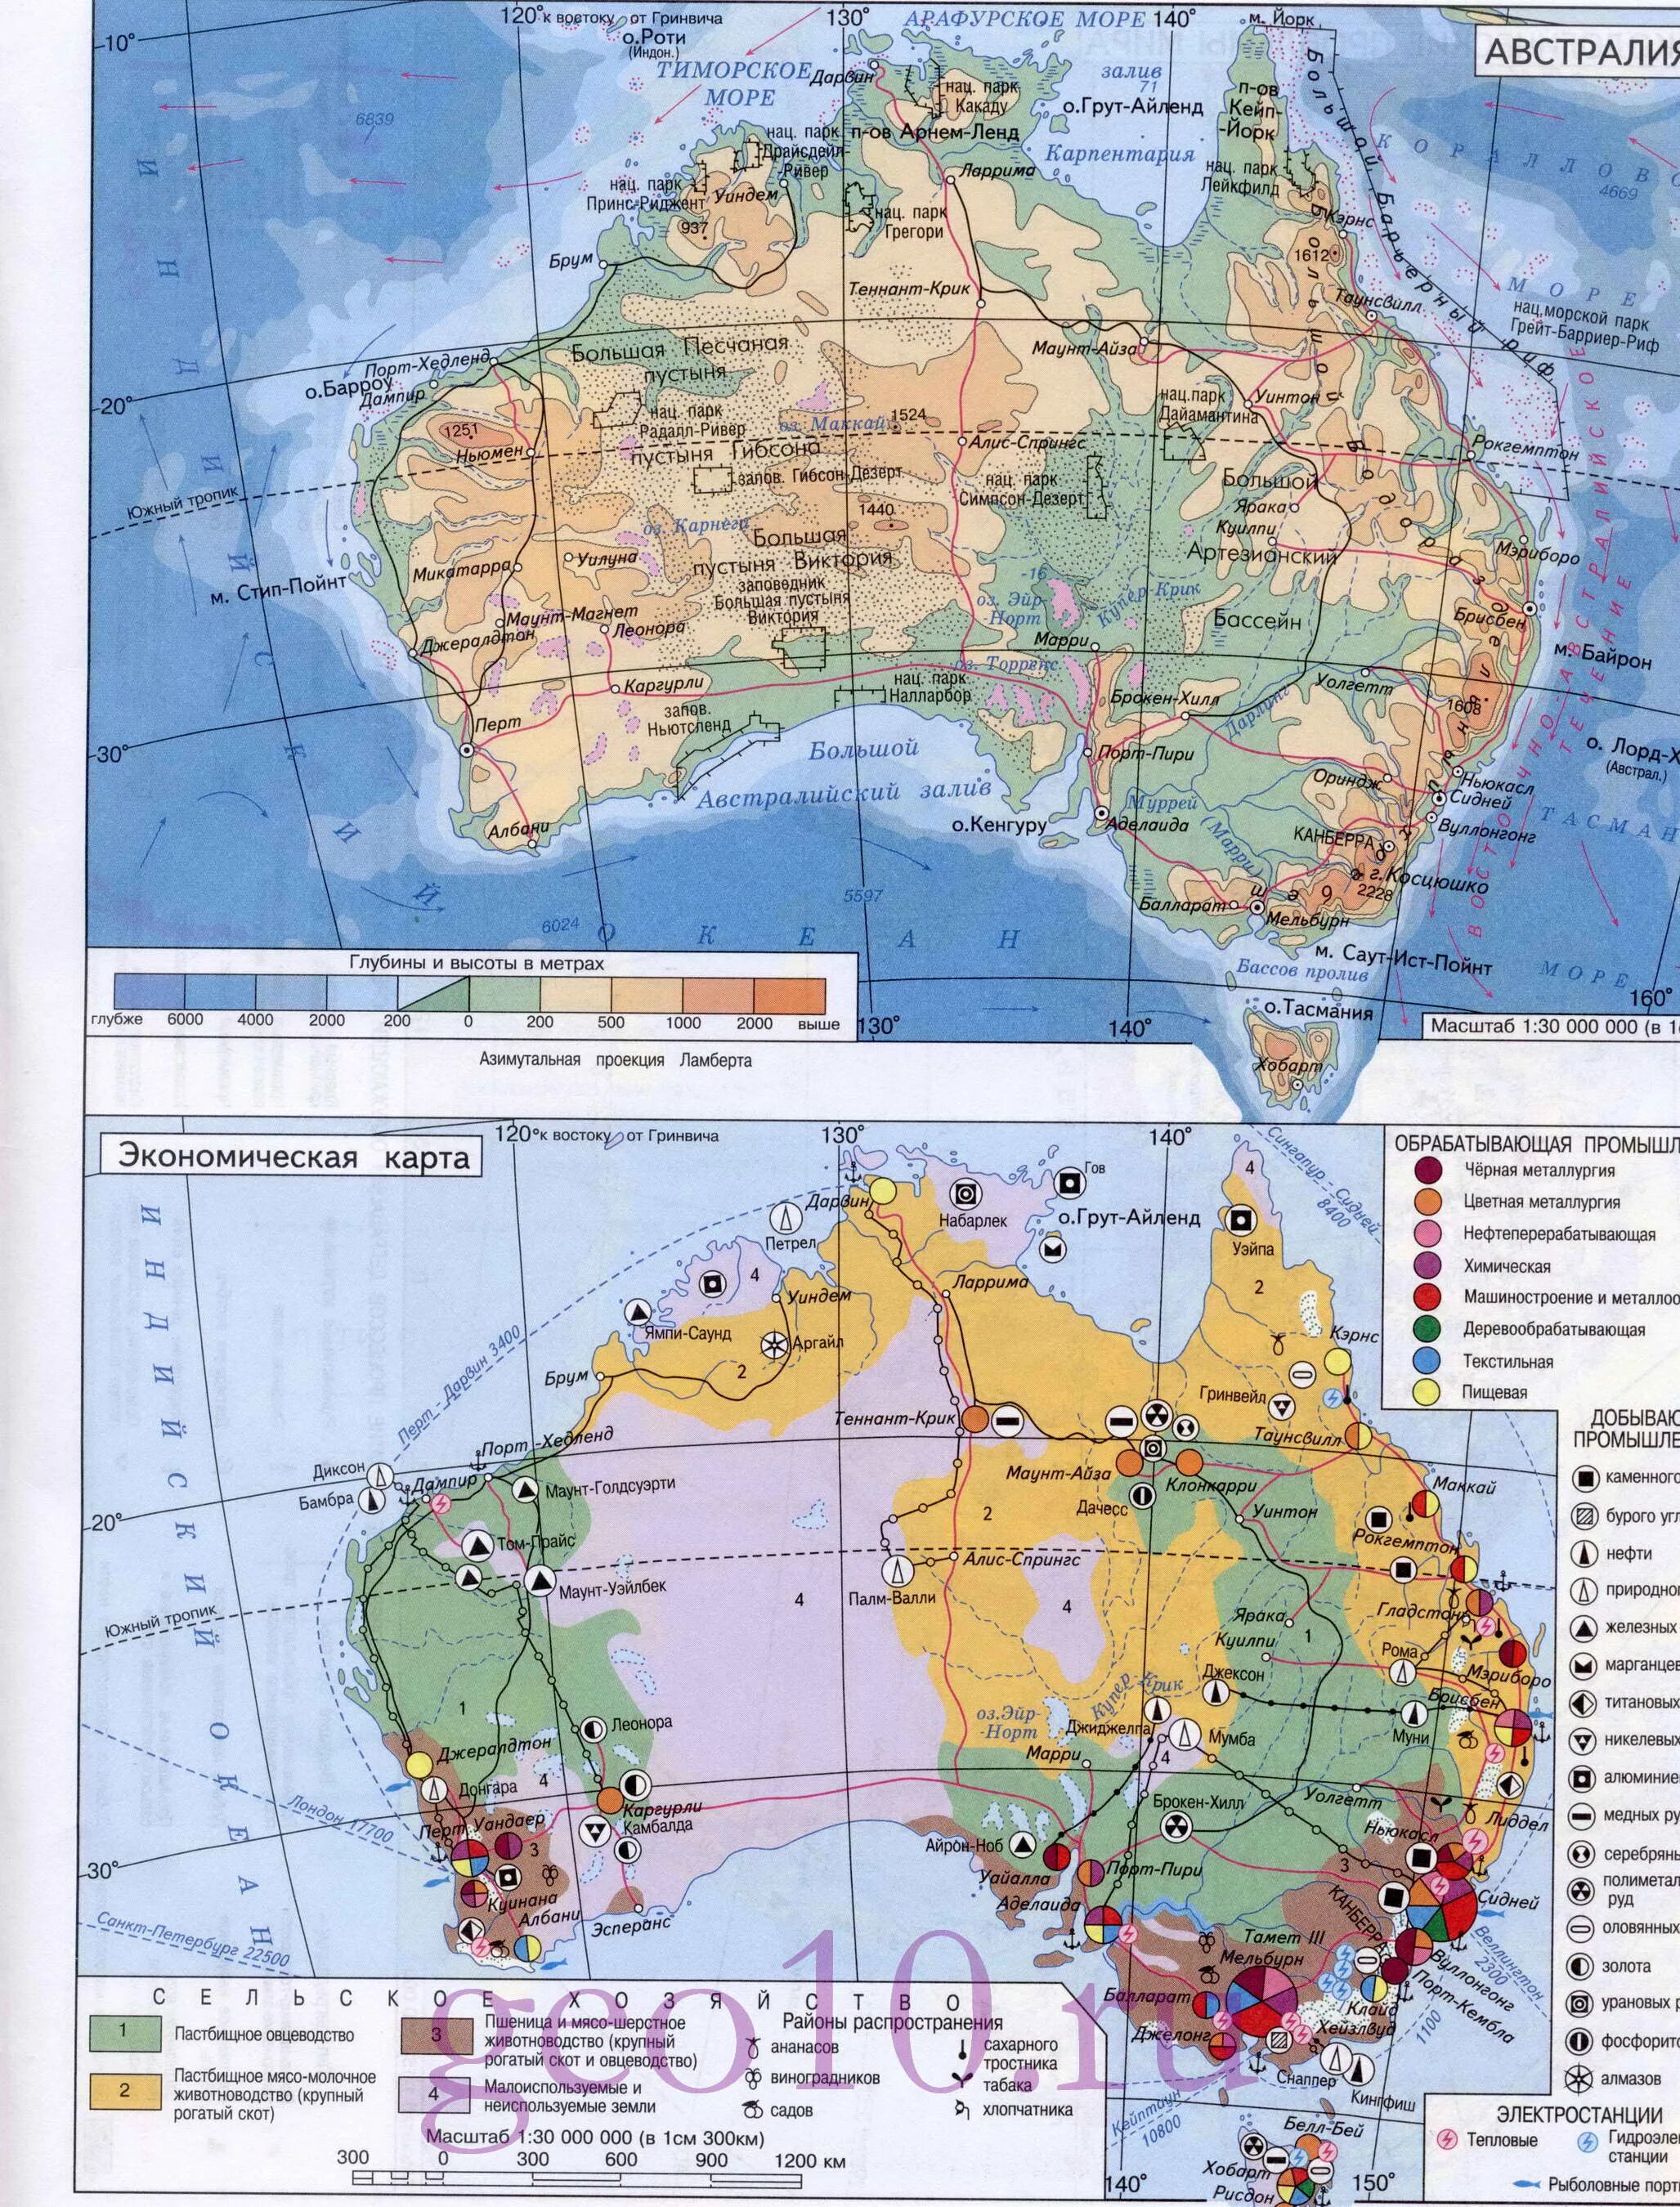 Подпишите крупнейшие города австралии. Карта Австралии атлас 10 класс. Карта Австралии атлас 11 класс. Карта Австралии атлас 10-11 класс. Промышленные центры Австралии контурная карта.